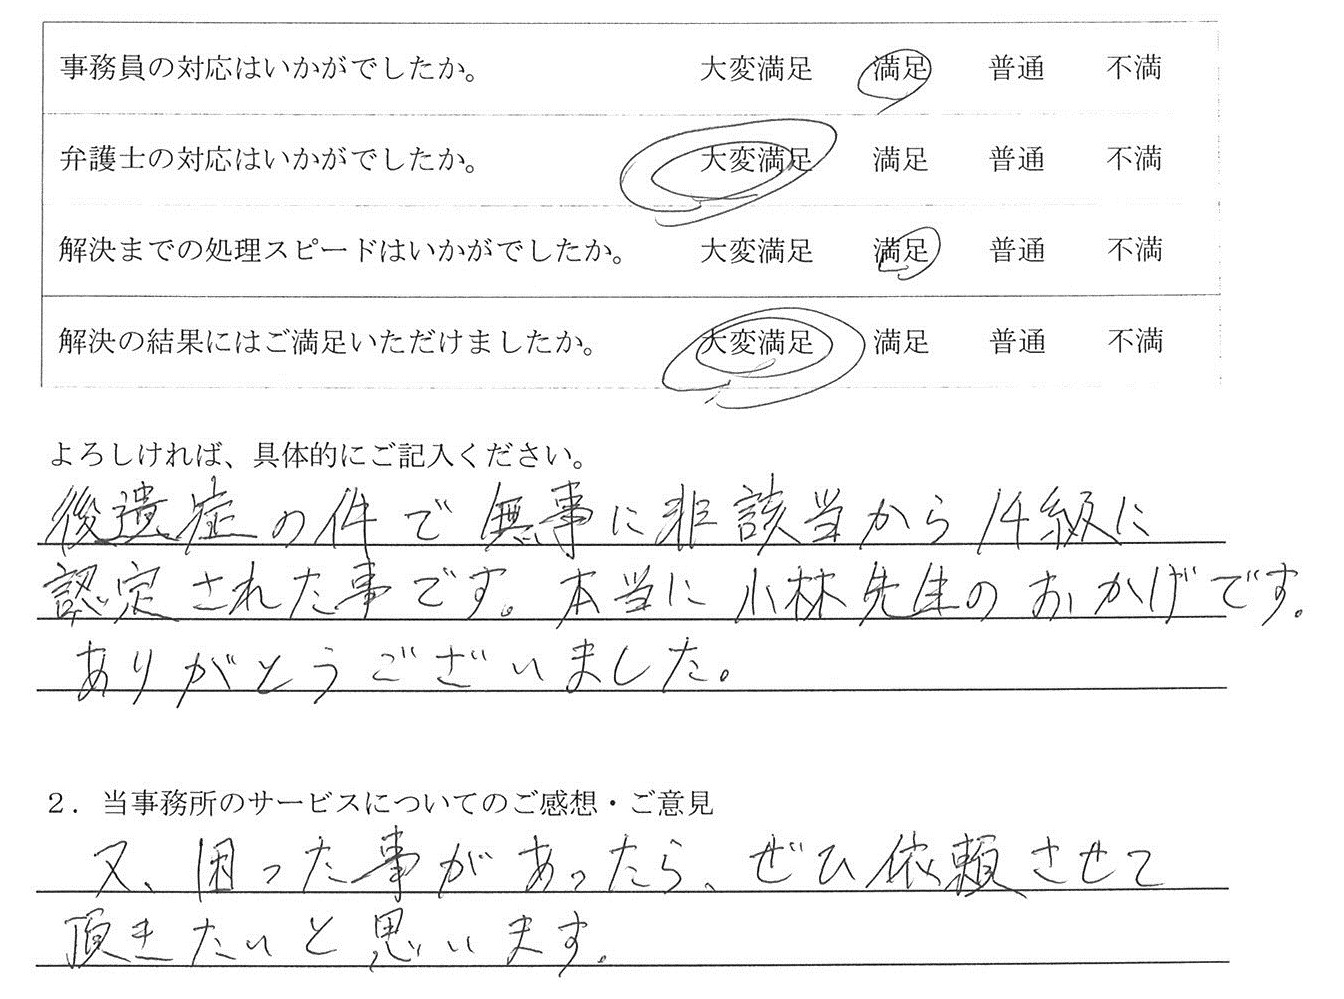 愛知県清須市M様のご感想　（交通事故　損害賠償請求） : 「後遺症の件で無事に非該当から14級に認定された事です。本当に小林先生のおかげです。ありがとうございました」

「又、困った事があったら、ぜひ依頼させて頂きたいと思います」